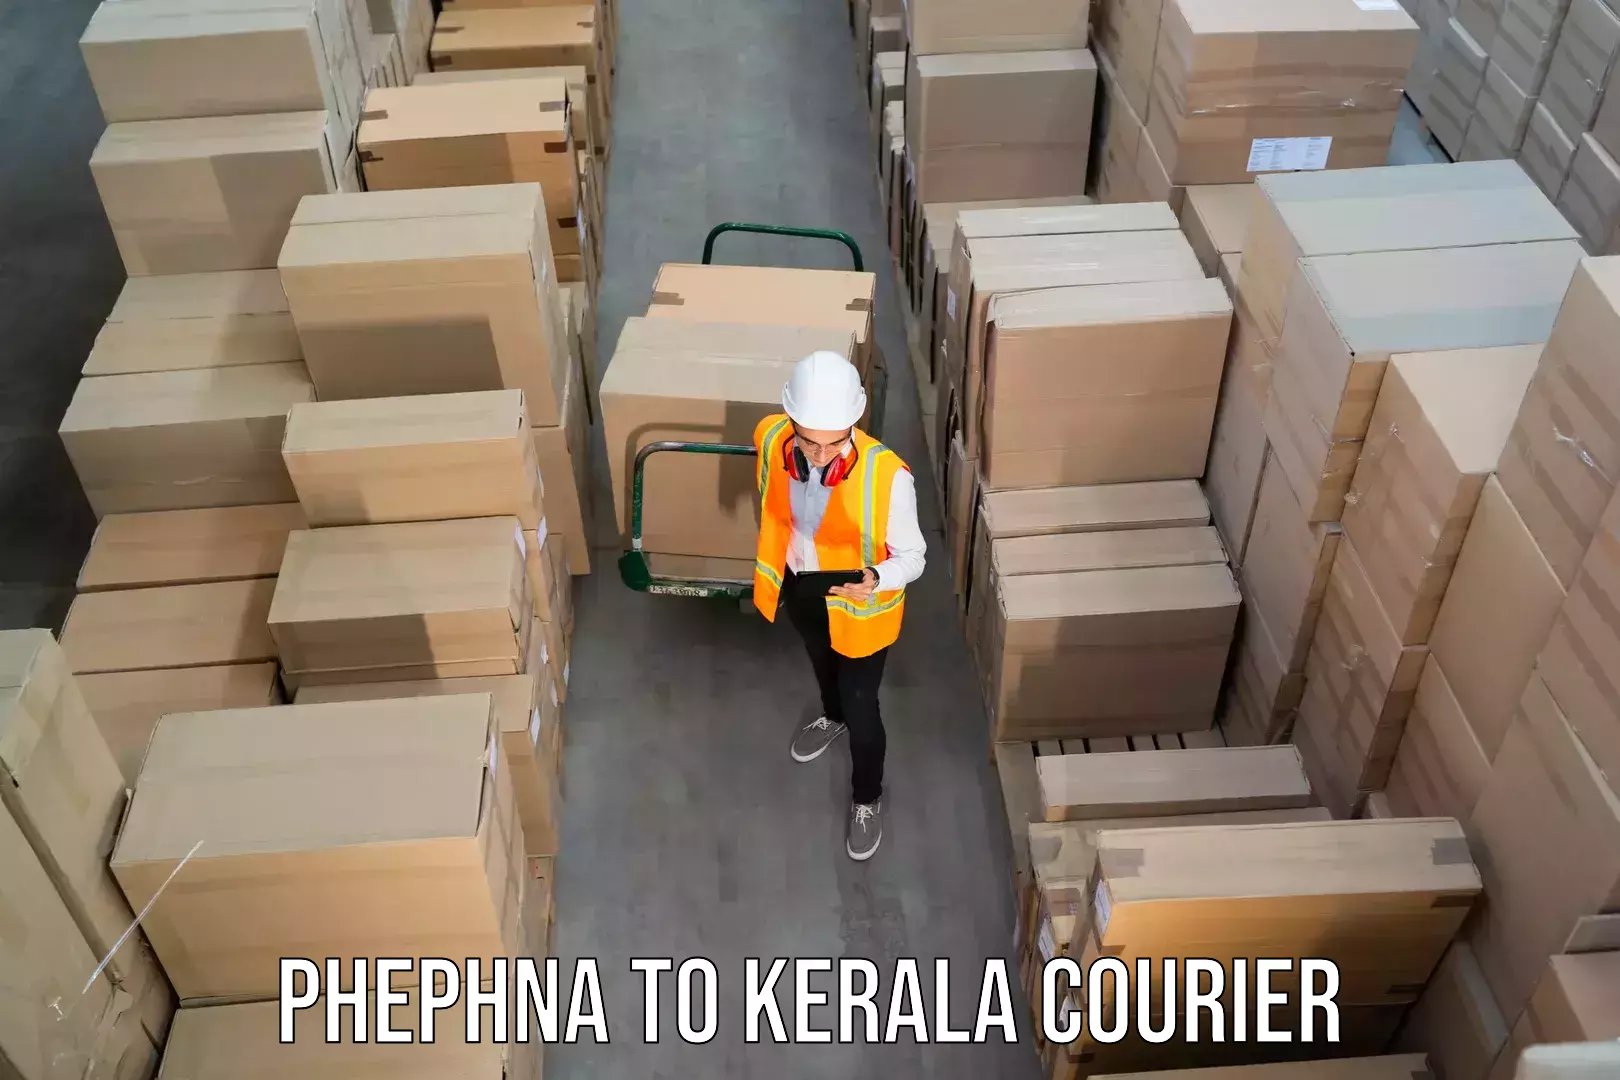 Courier service partnerships Phephna to Peravoor